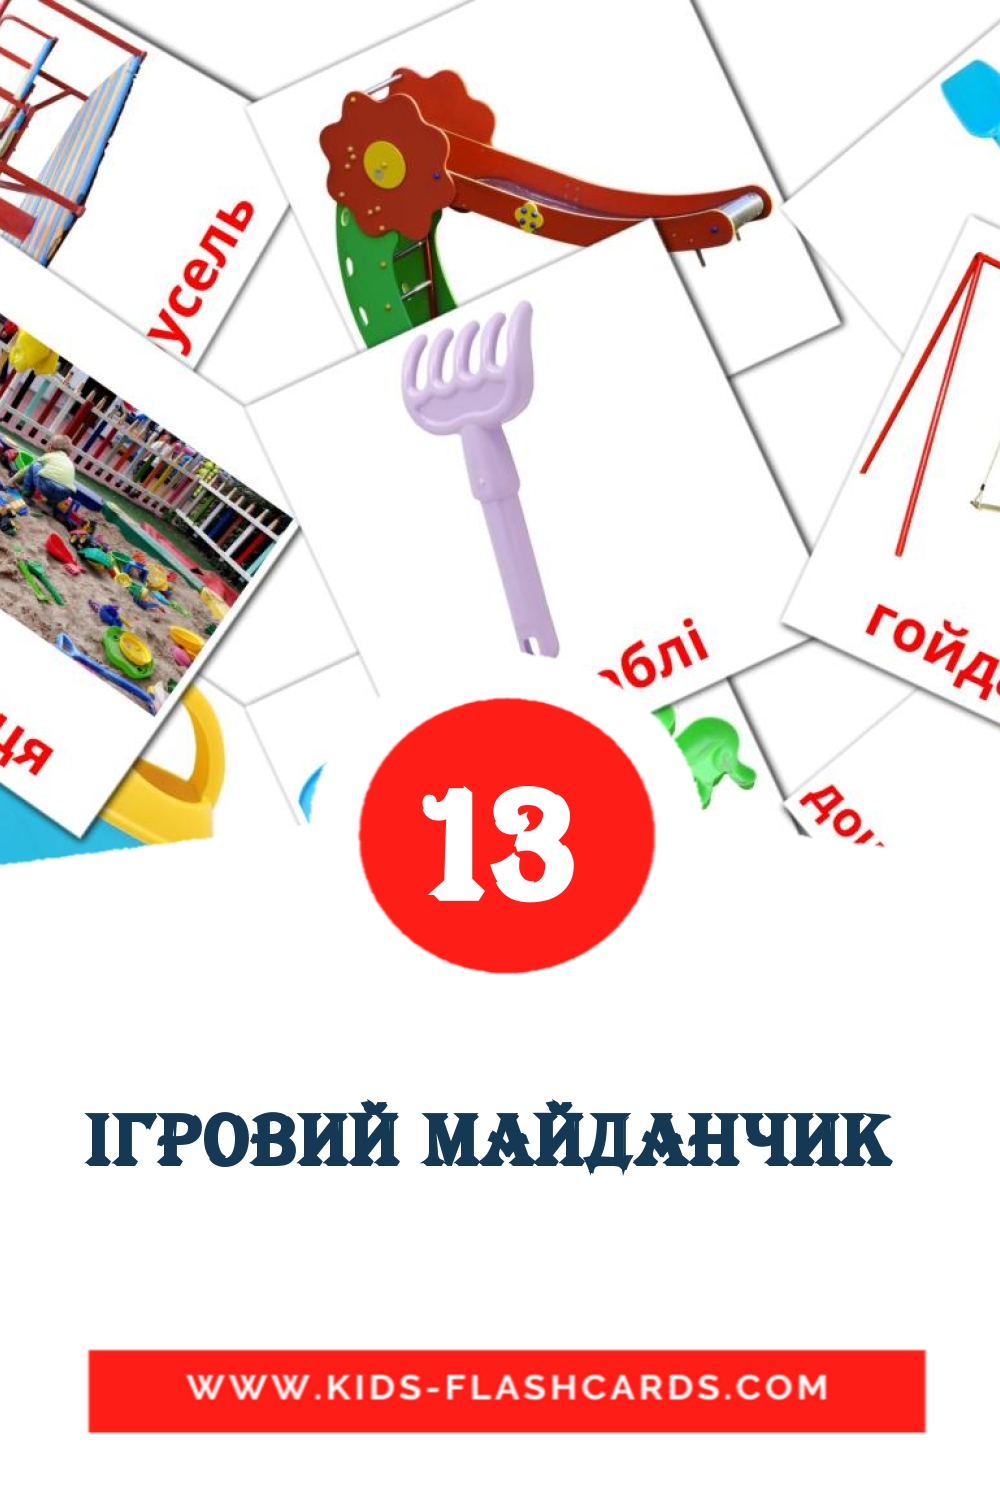 13 Cartões com Imagens de Ігровий майданчик  para Jardim de Infância em ucraniano